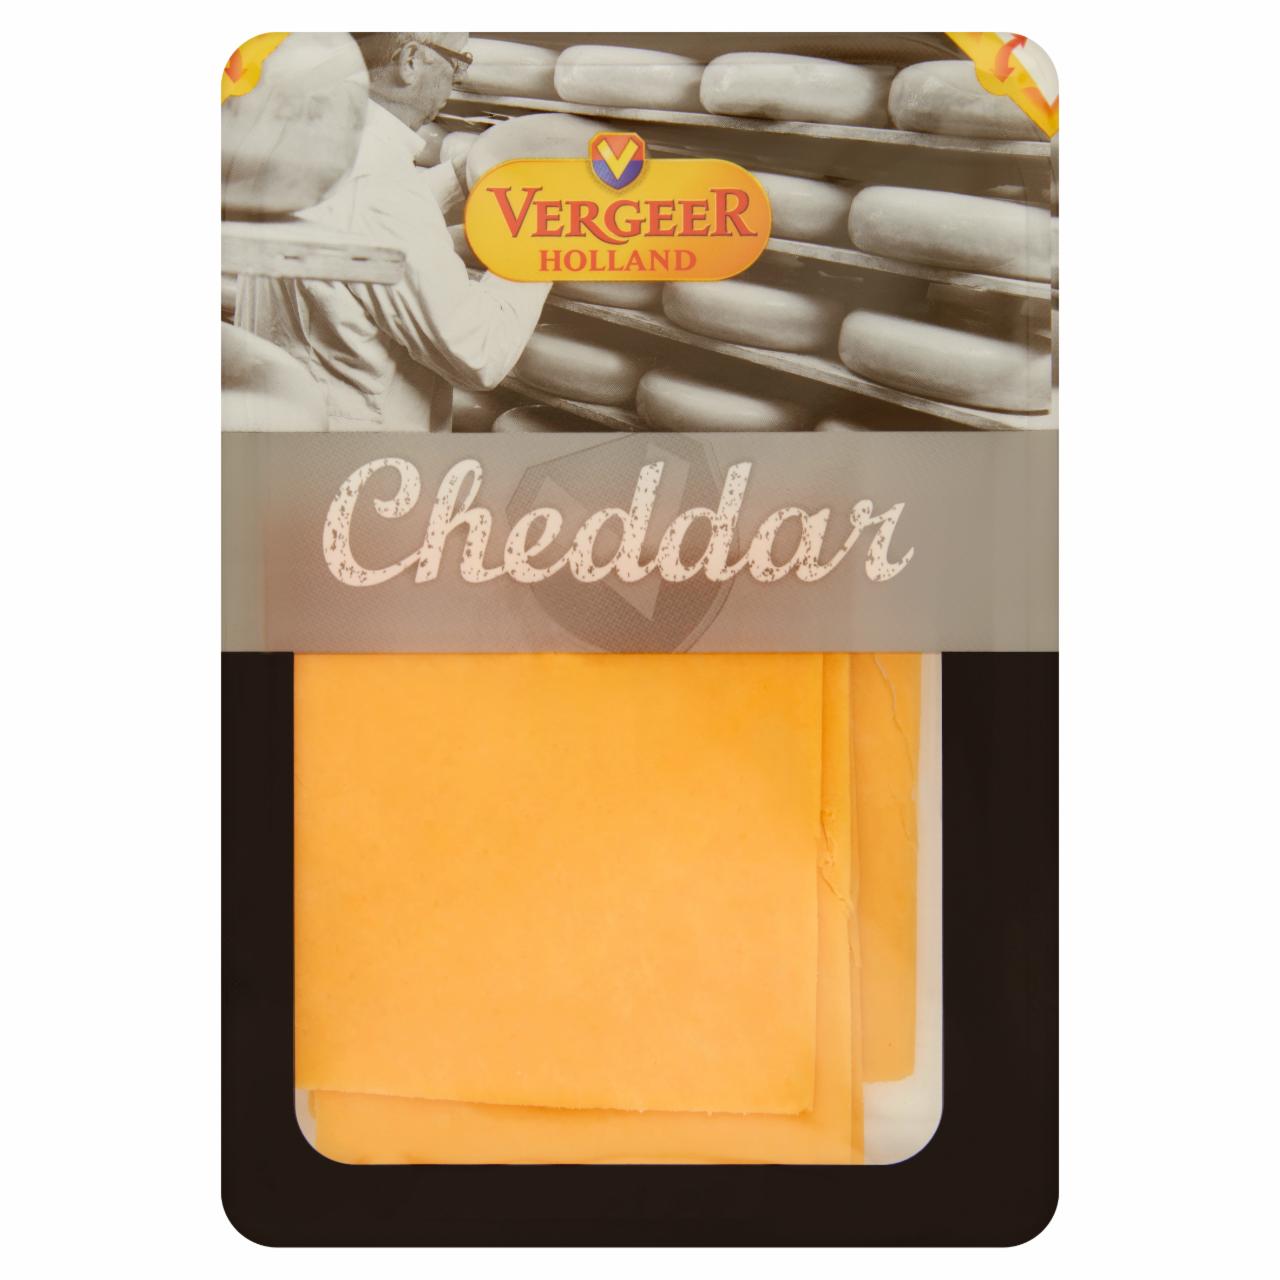 Képek - Vergeer Holland Cheddar vörös sajt 100 g